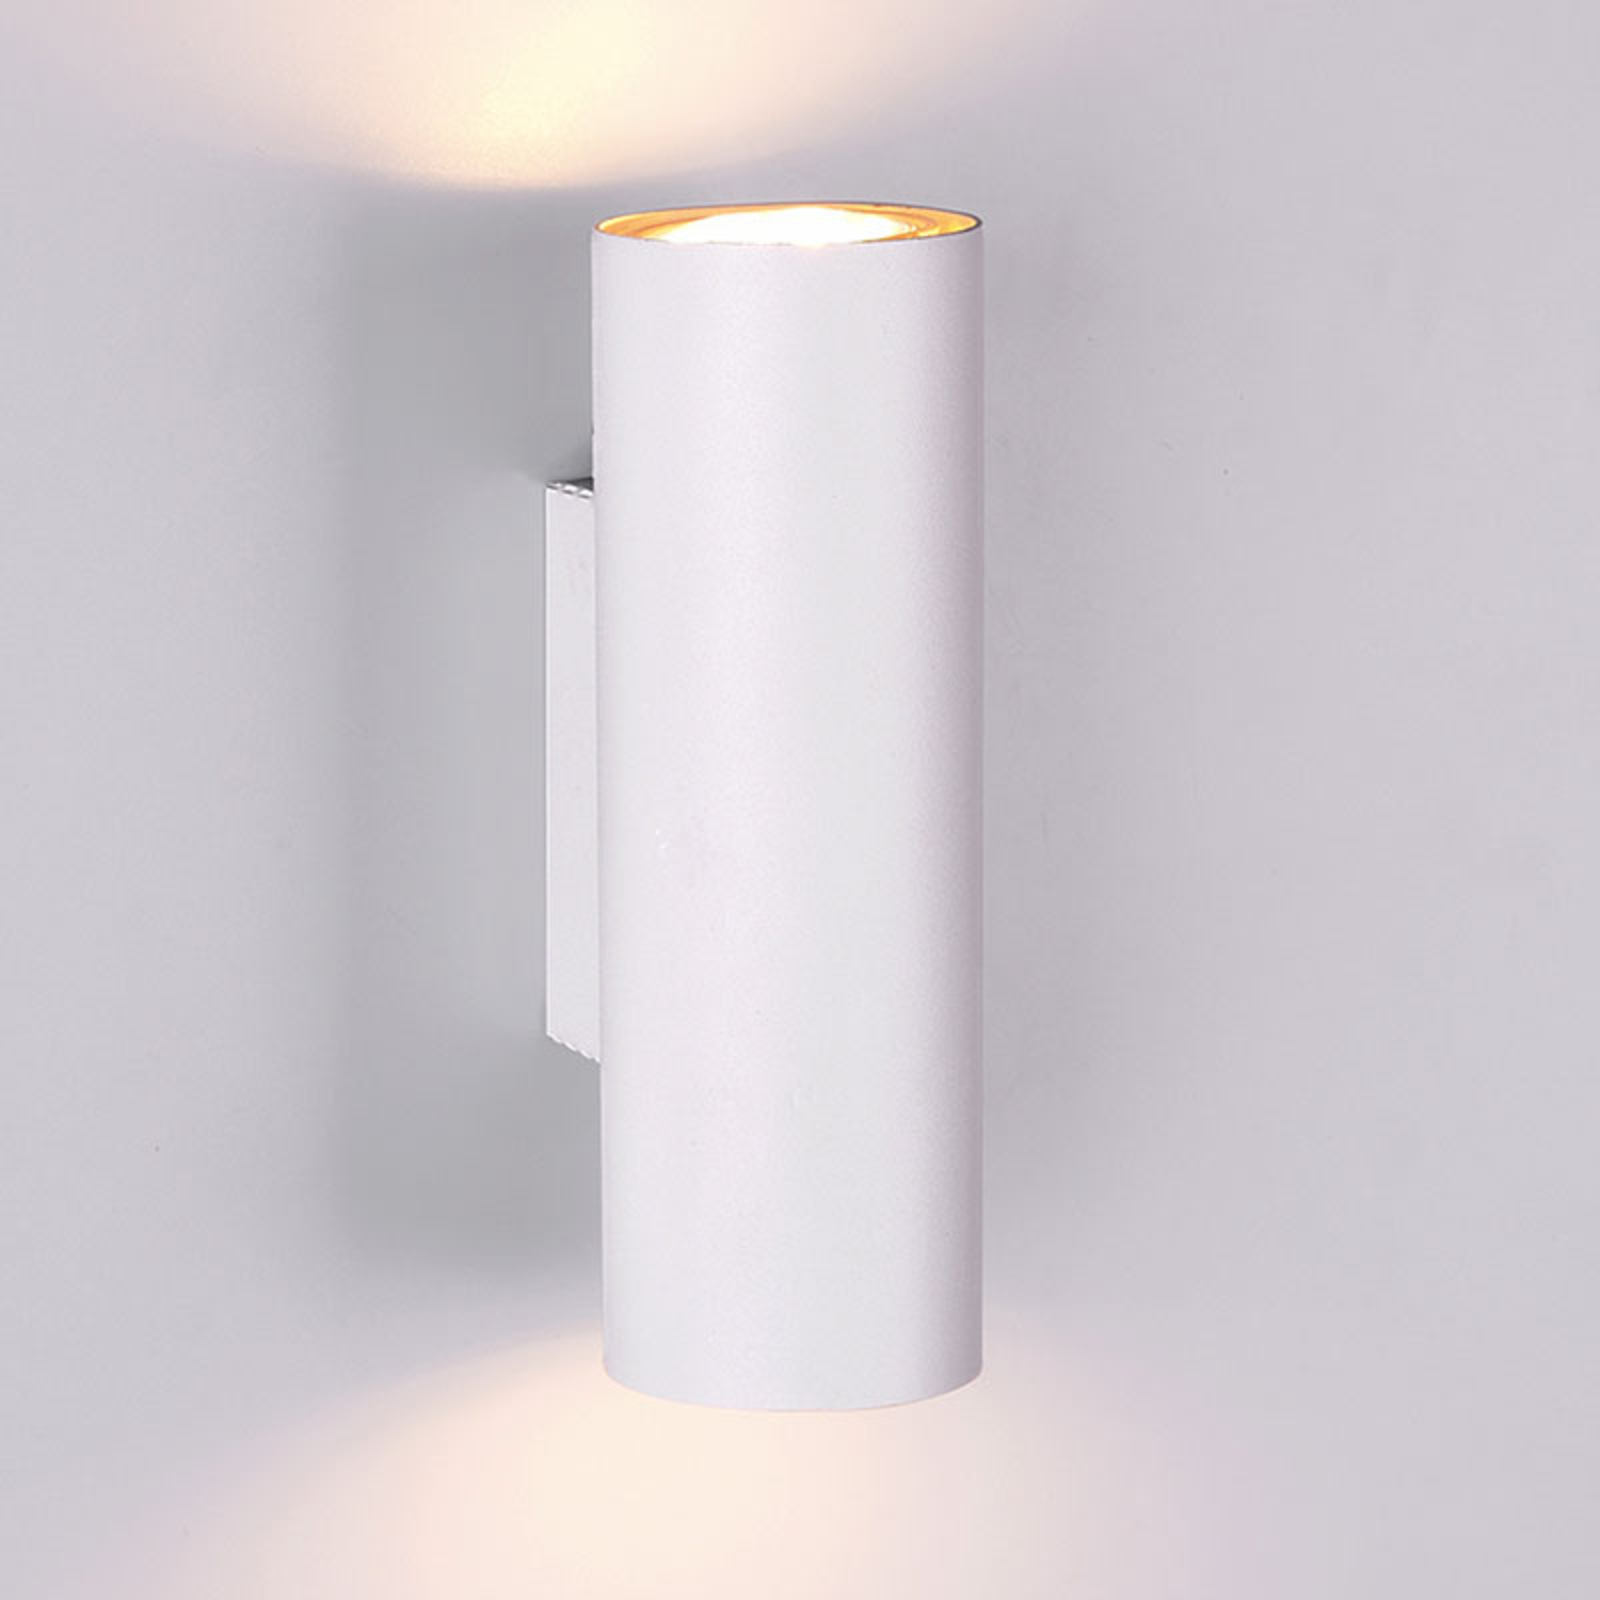 Marley zidna svjetiljka u bijeloj boji